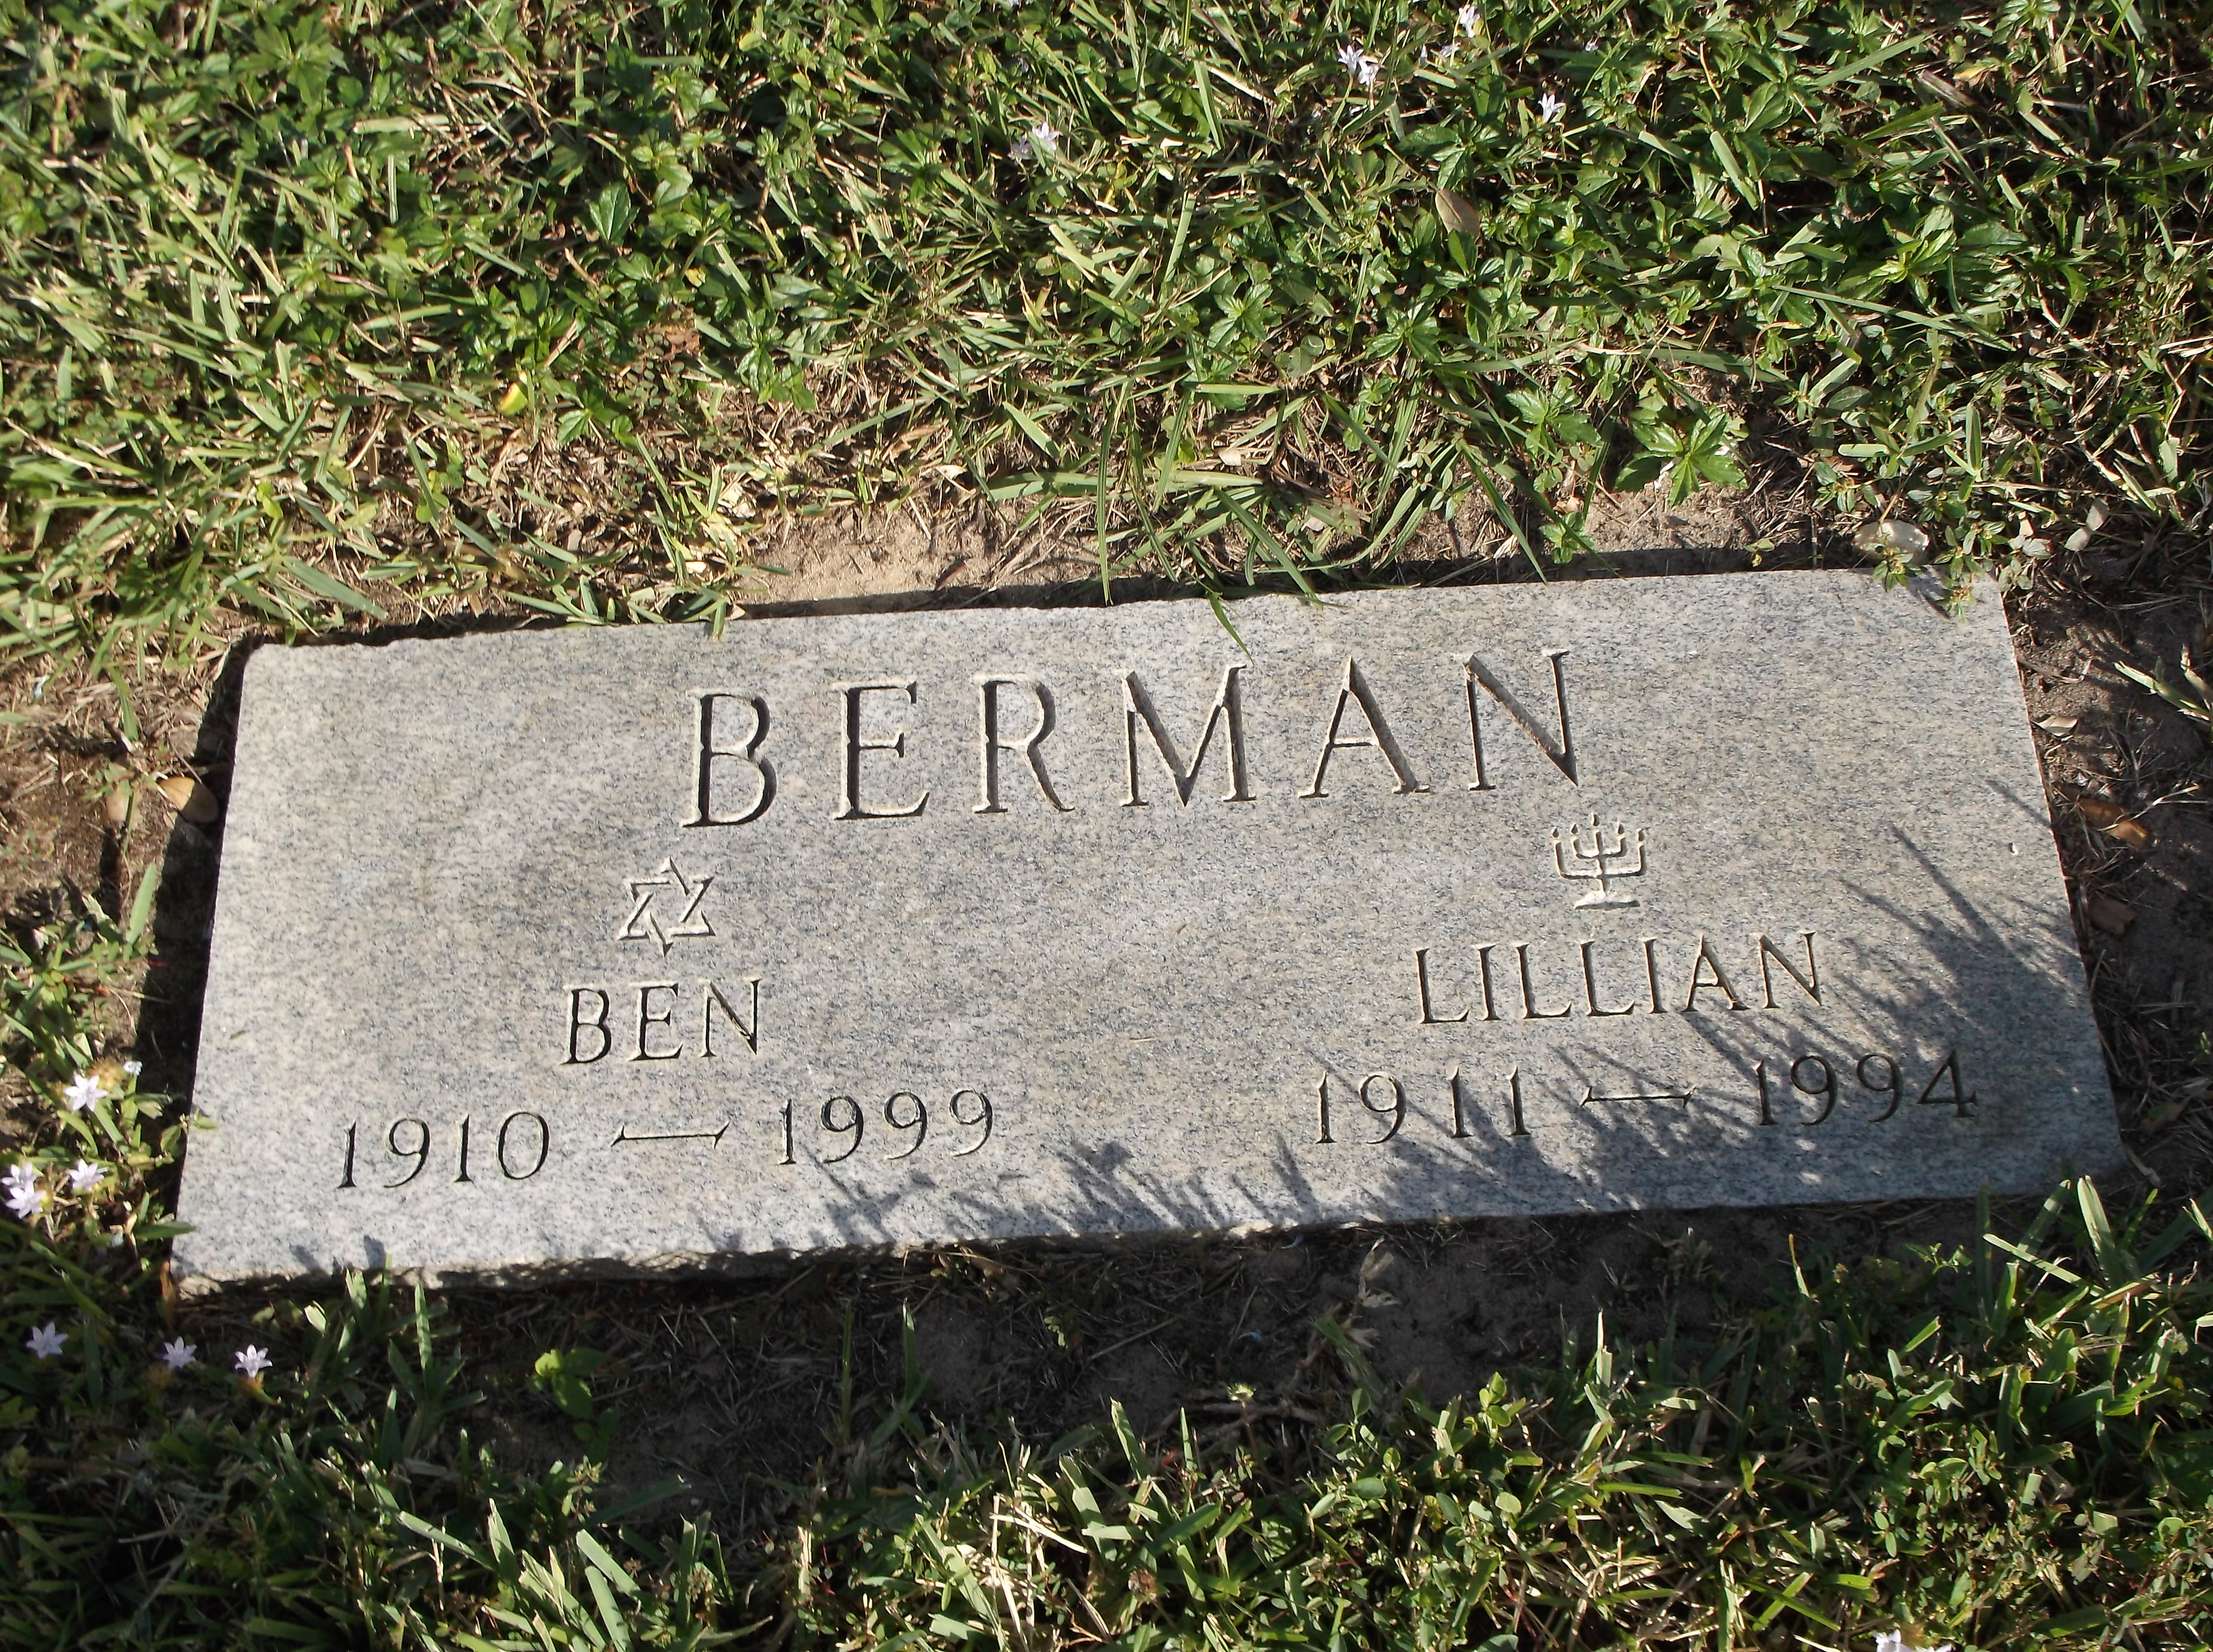 Lillian Berman